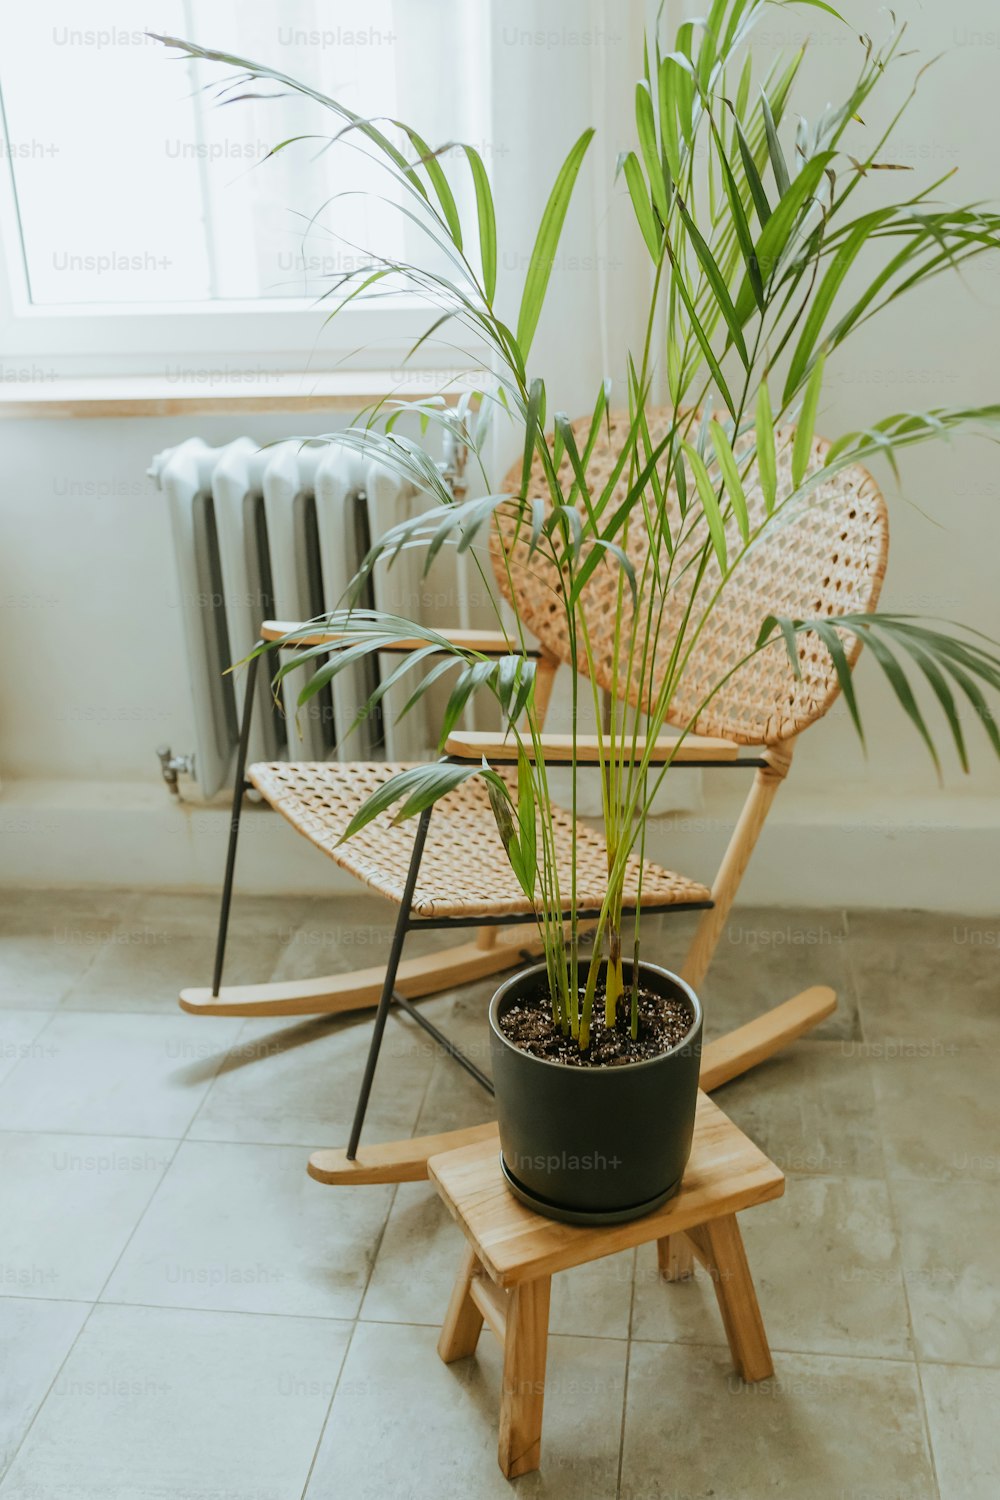 una planta en maceta sentada encima de una silla de madera